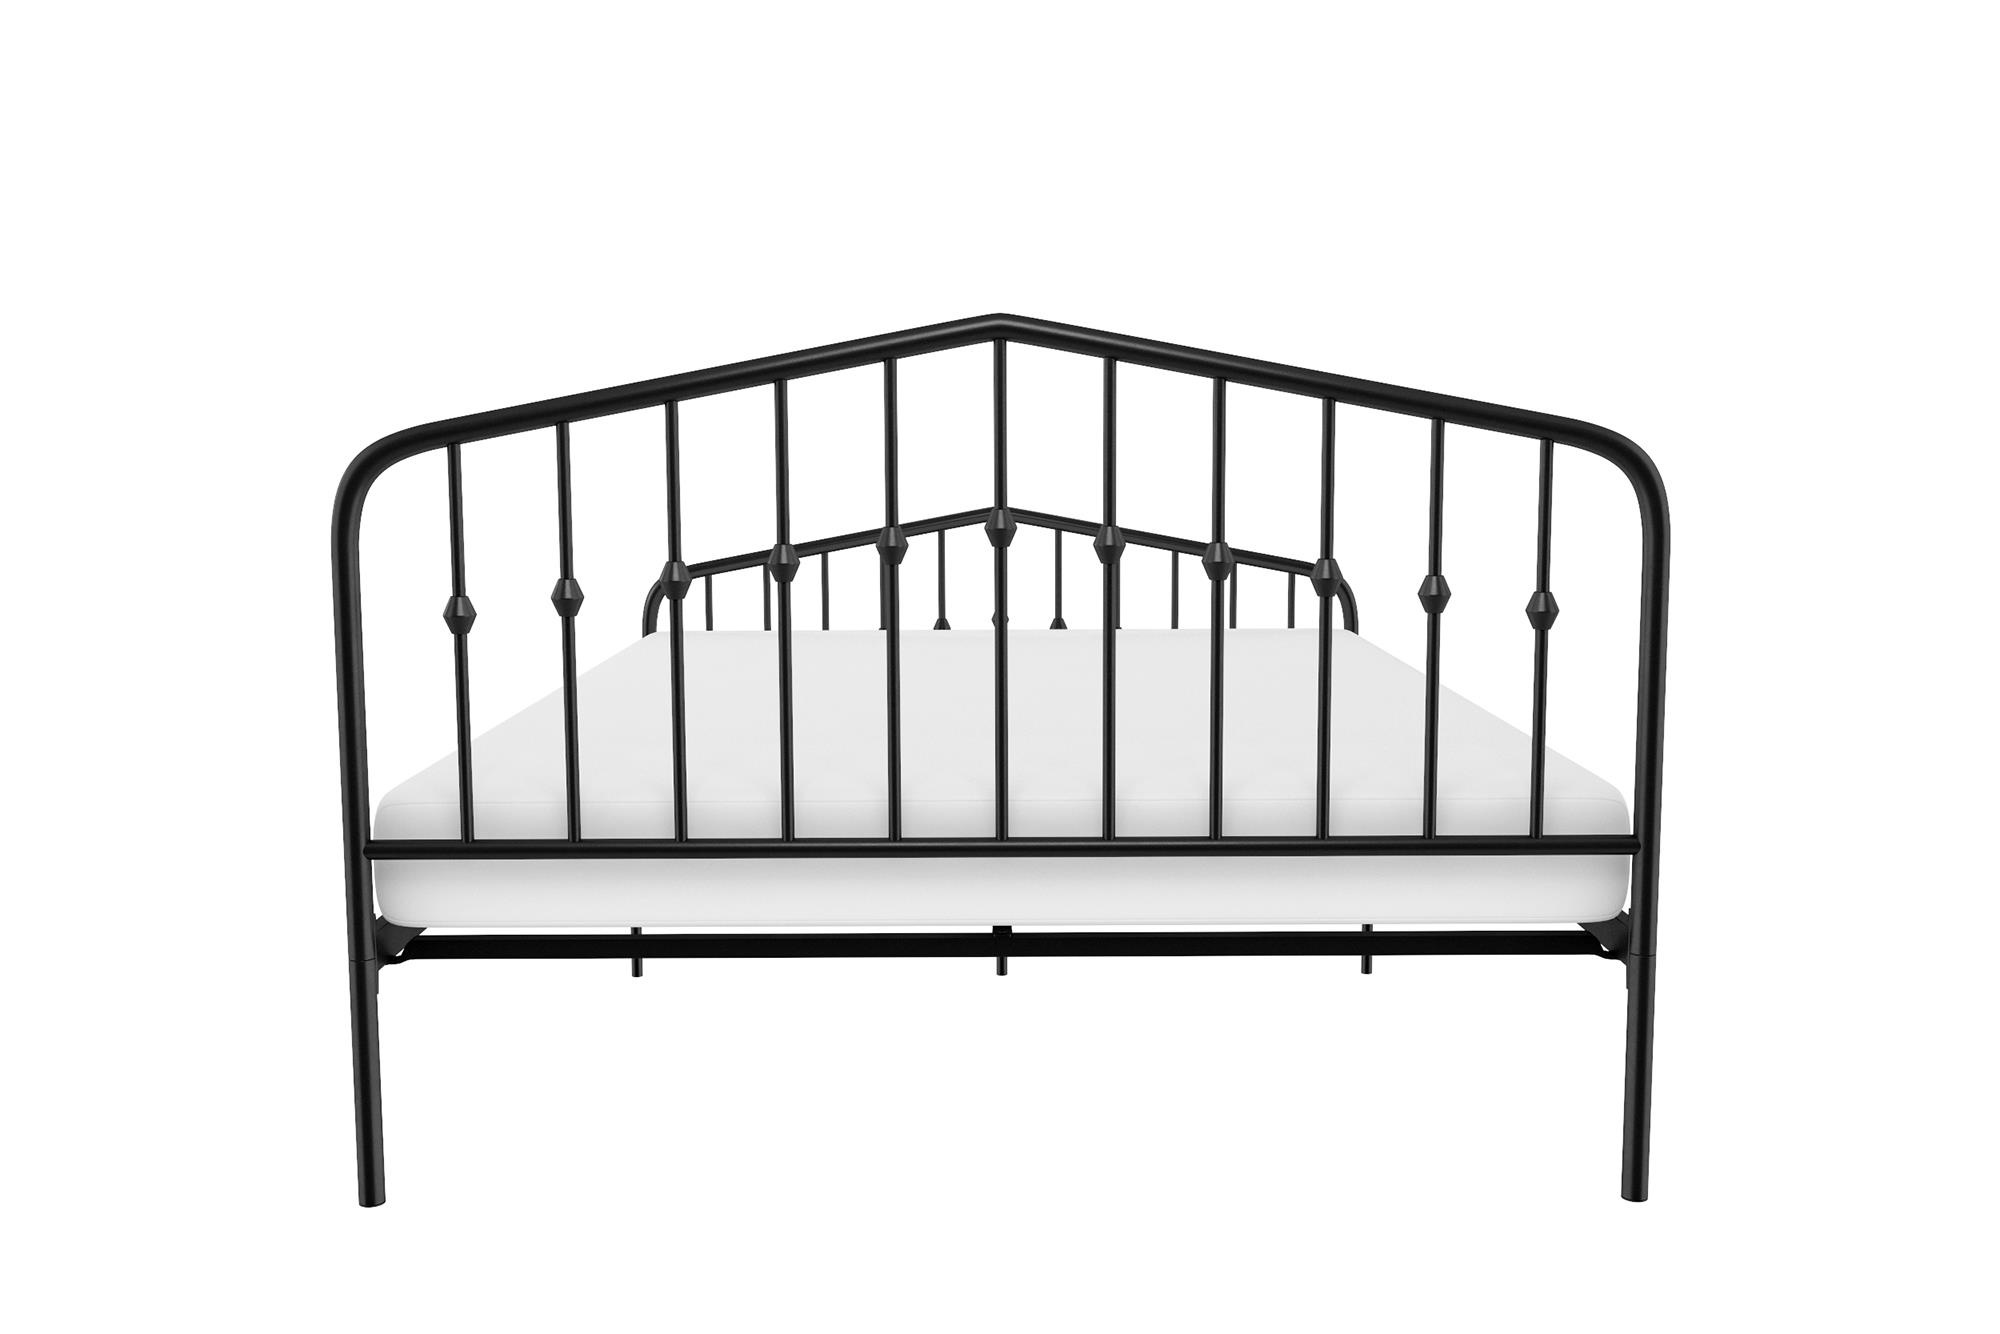 Novogratz Bushwick Metal Platform Bed and Adjustable Frame, Full, Black - image 5 of 19